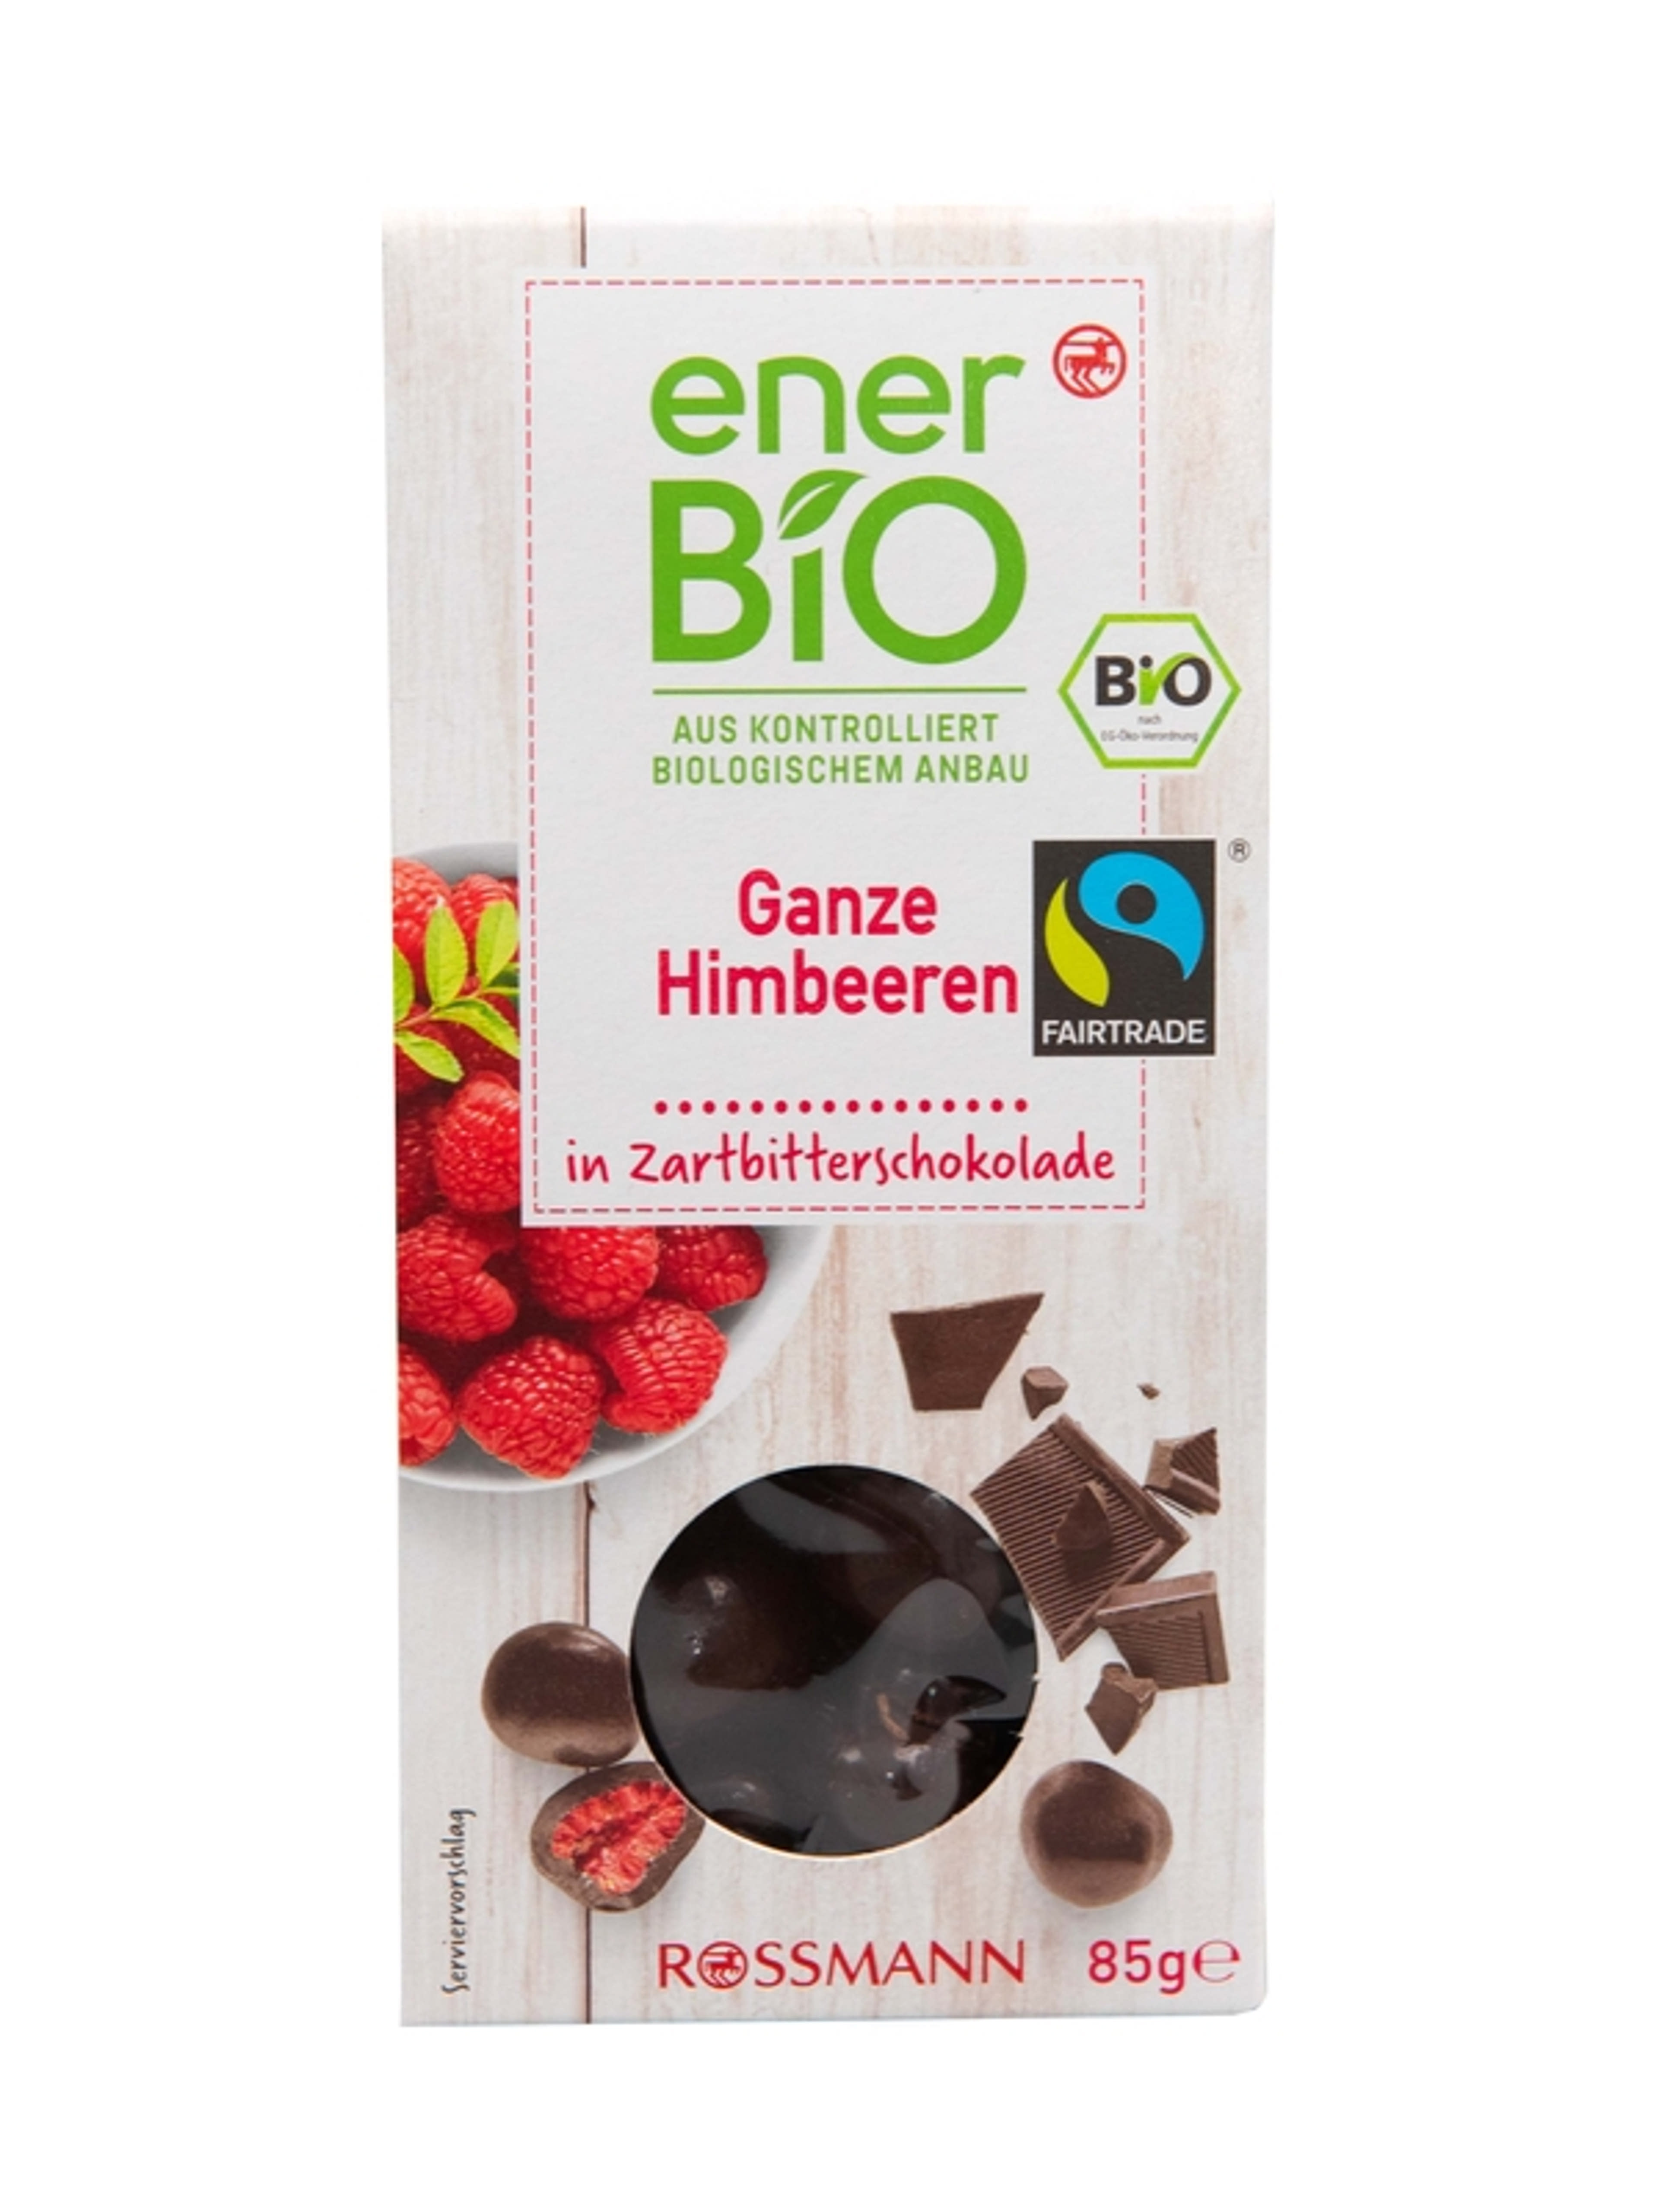 enerBio bio málna étcsokoládéban - 85 g
vegán, gluténmentes
ellenőrzött biológiai gazdálkodásból-1